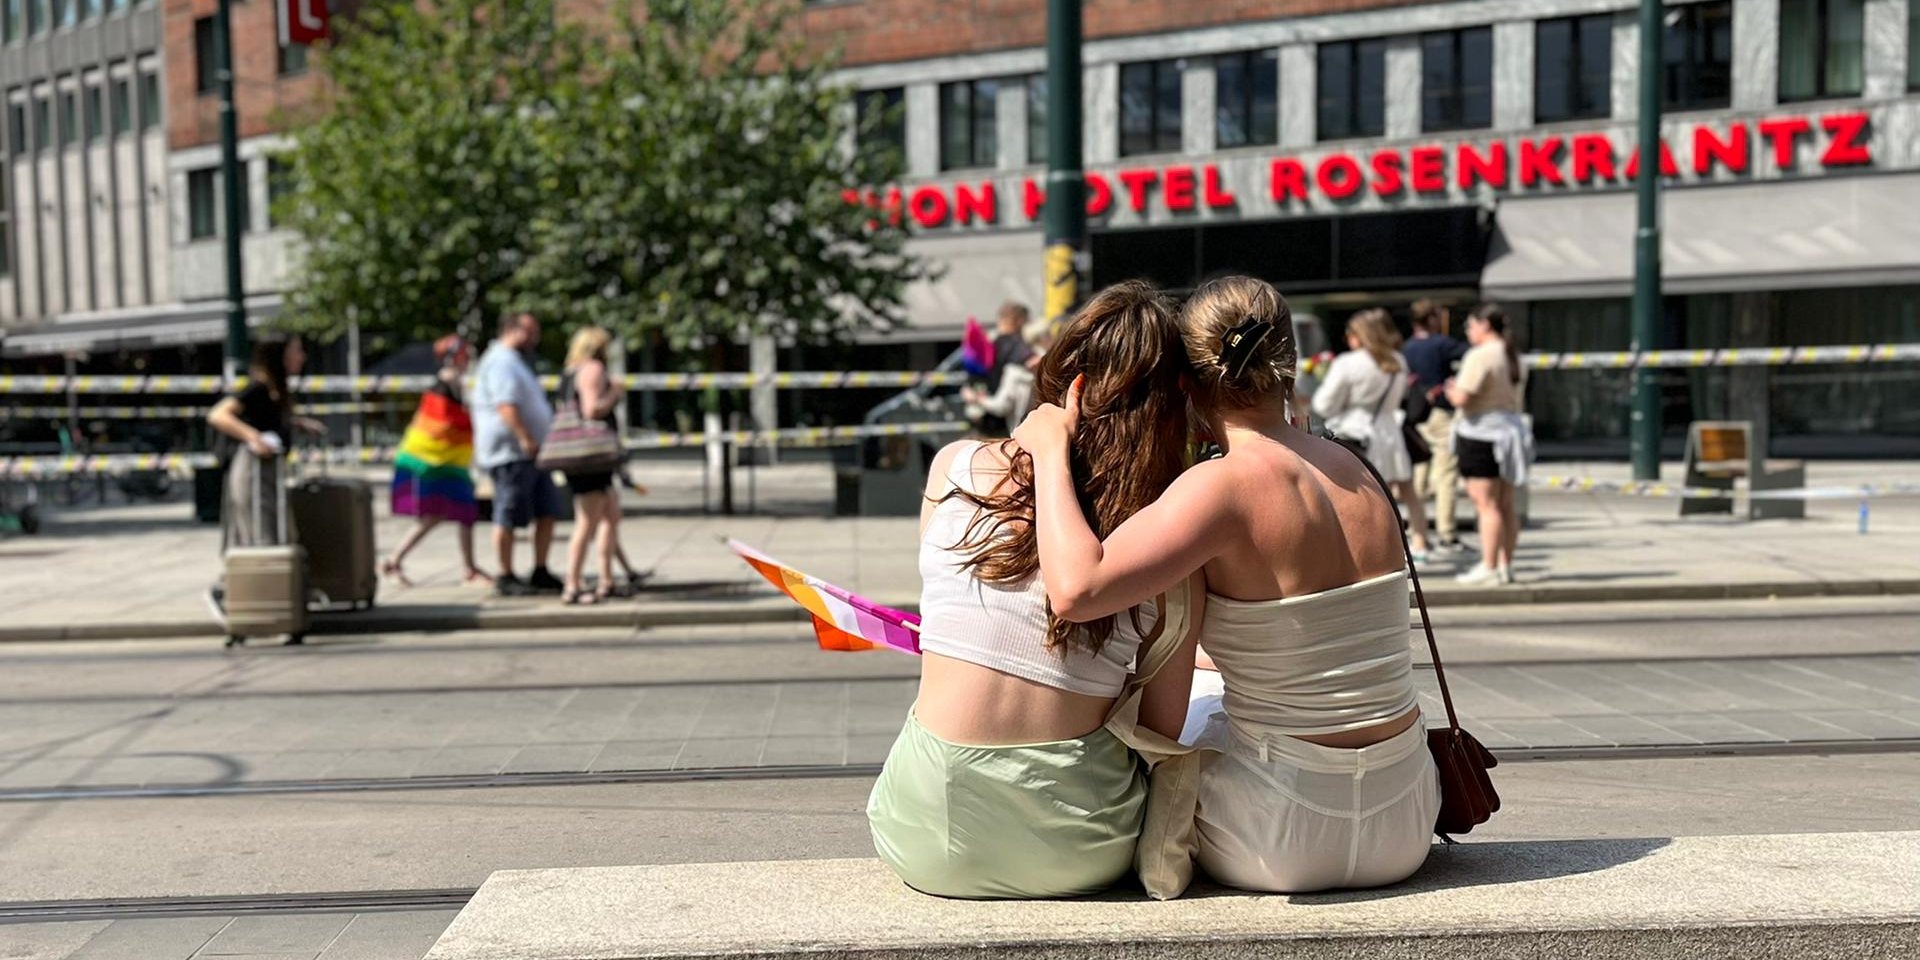 Membros da comunidade LGBT comovidos com o atentado, deslocaram-se ao local